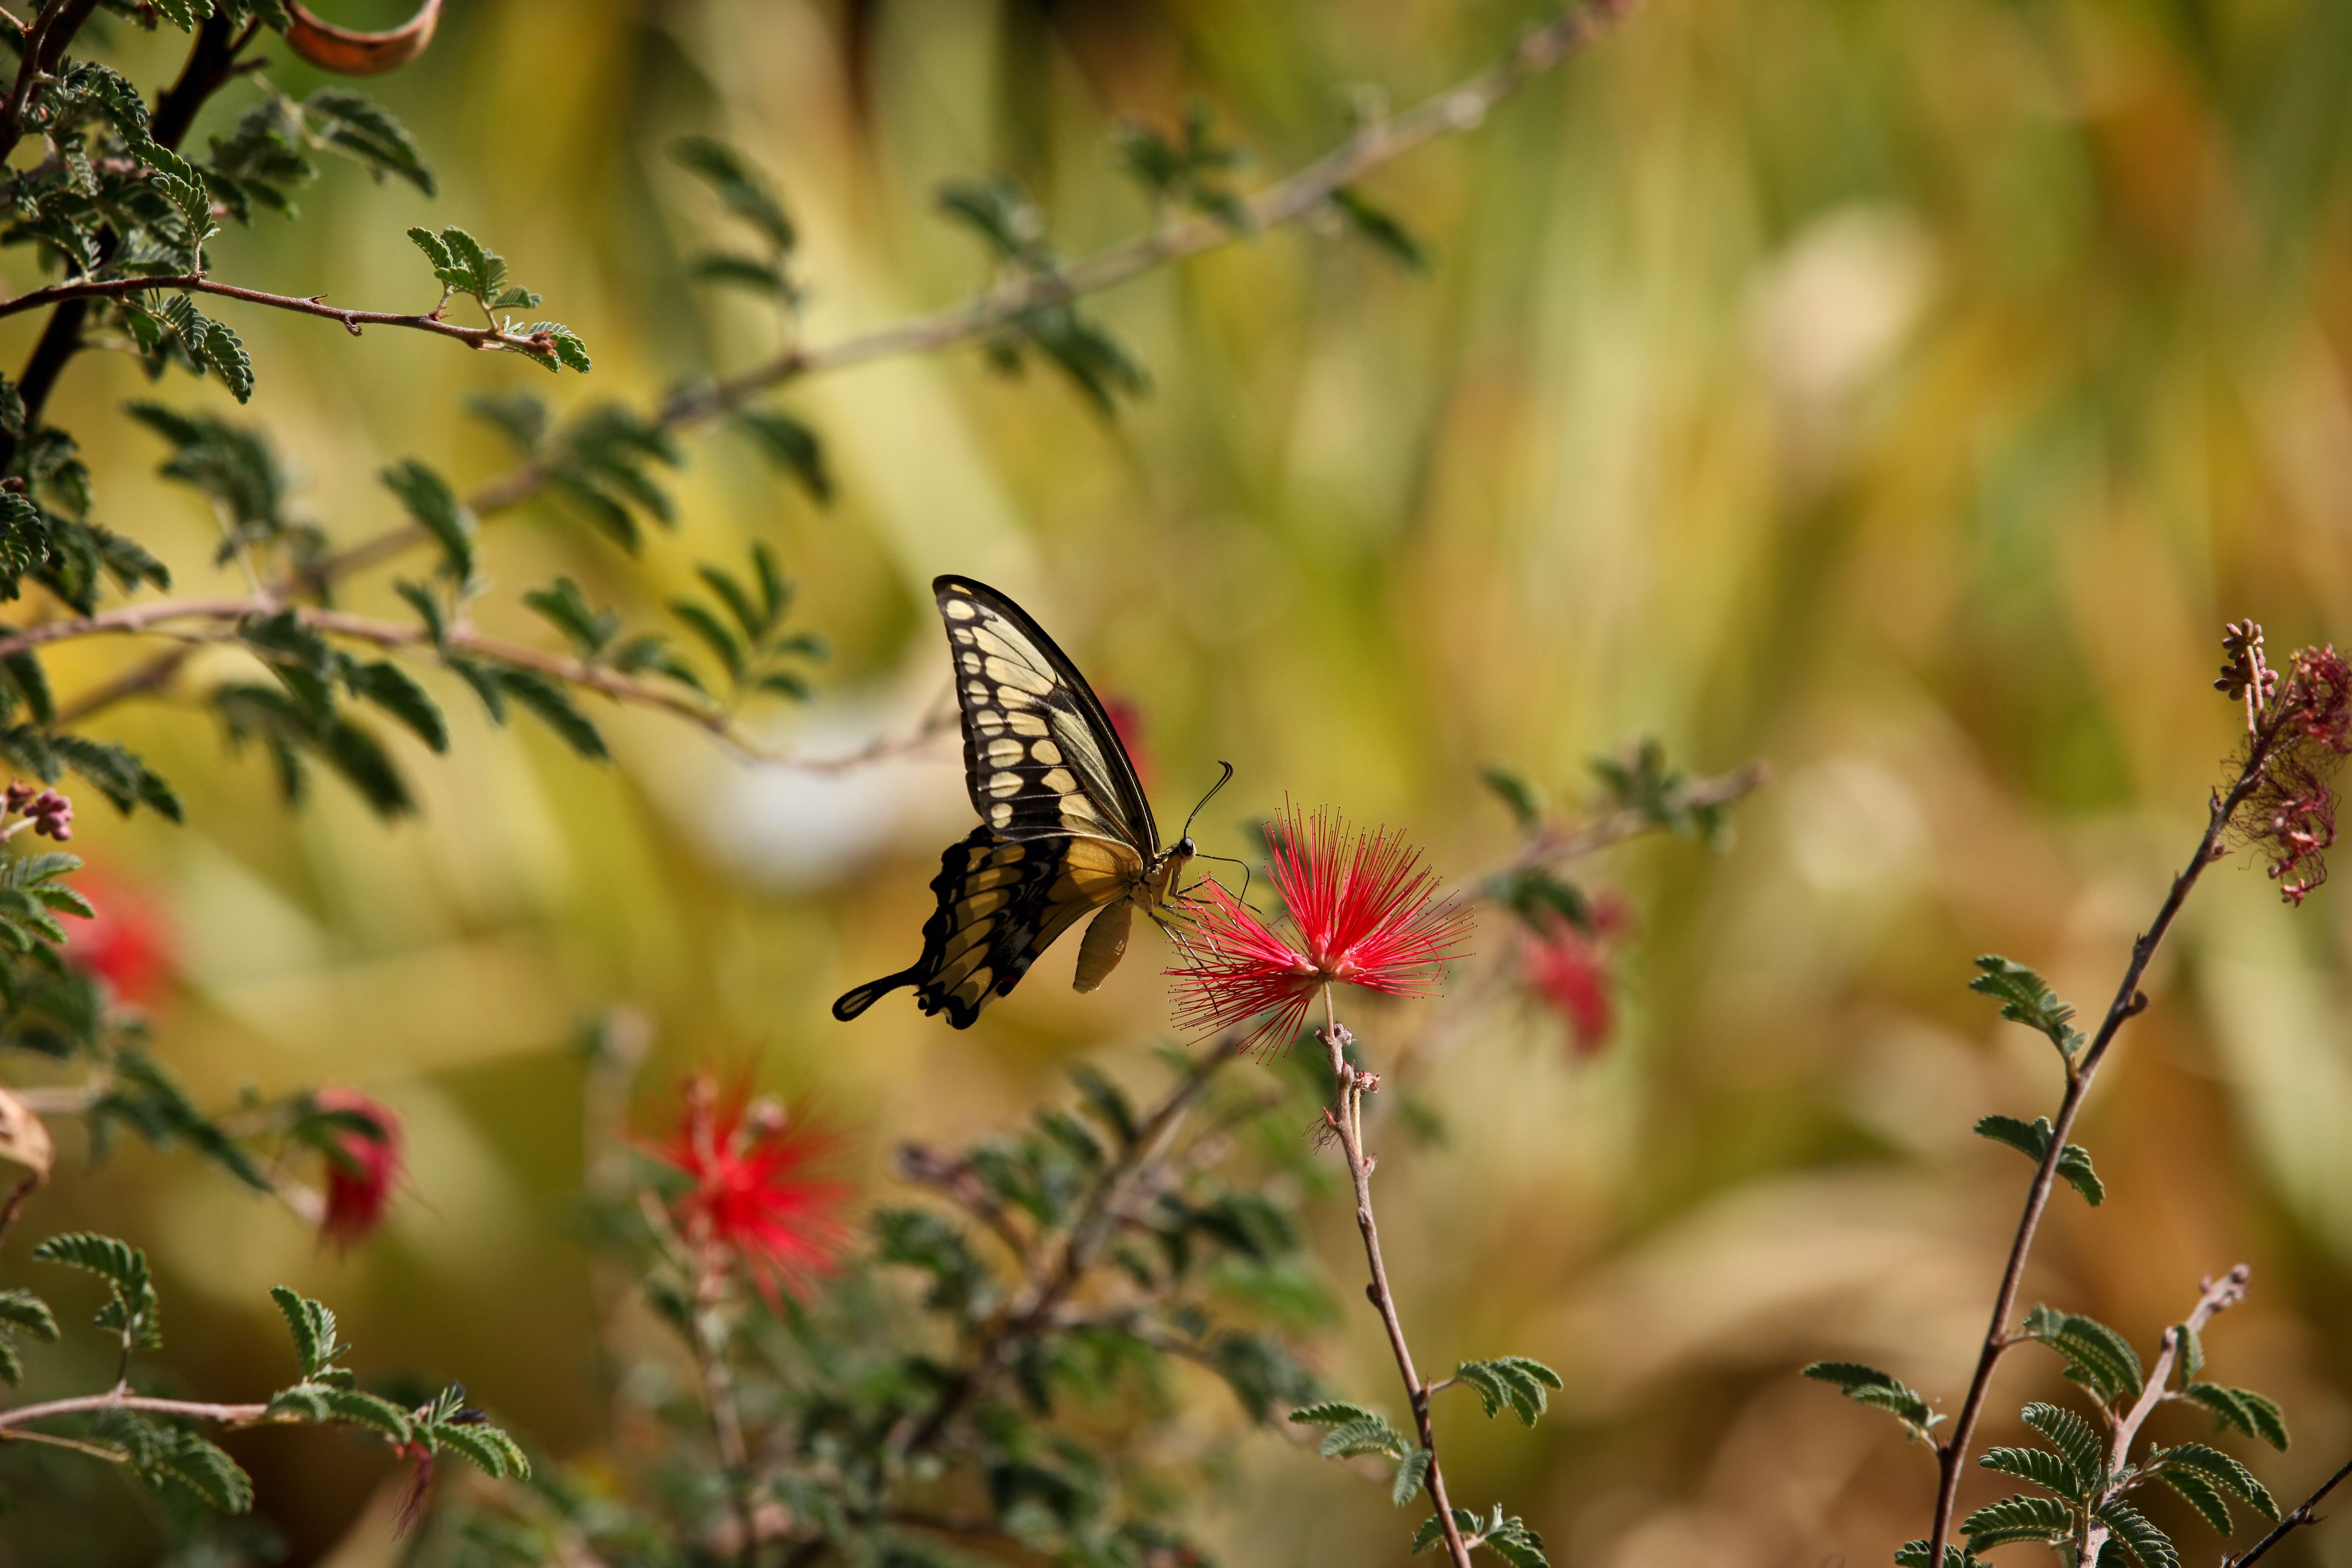 Giant Swallowtail at Tucson Botanical Gardens, Arizona